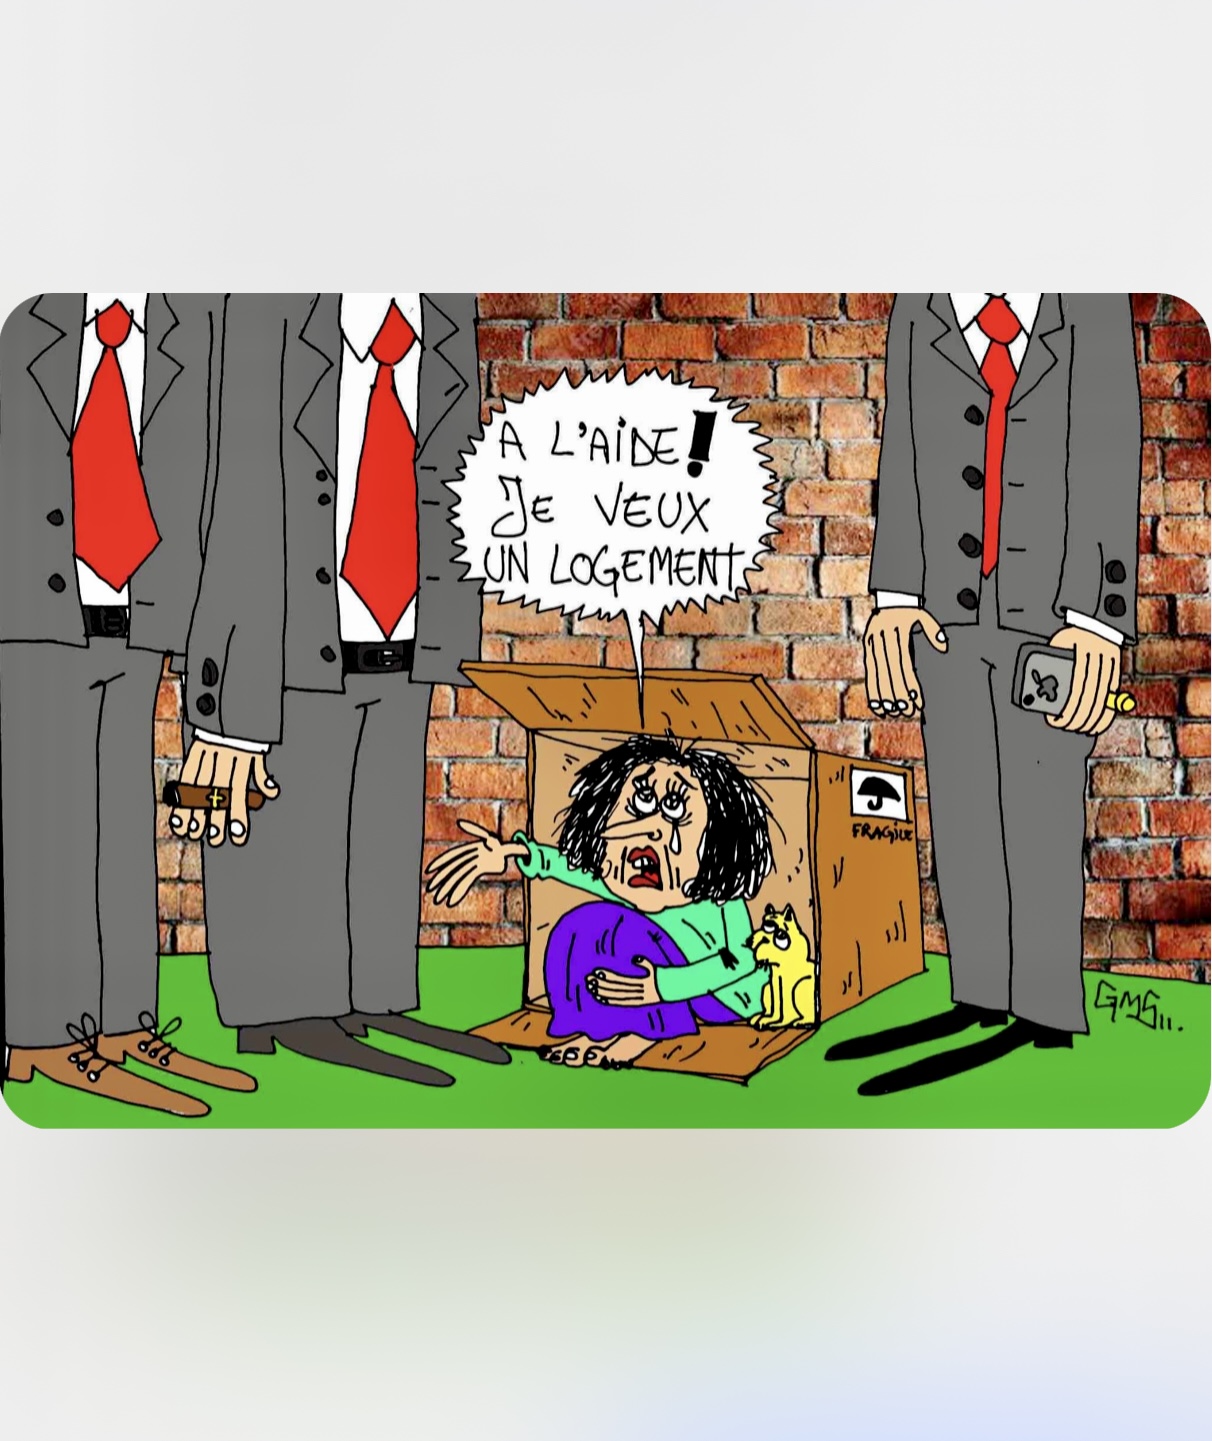 Caricature représentant une femme dans une boîte, criant désespérément "À l'aide ! Je veux un logement !" tandis qu'un homme en costume se tient à proximité.